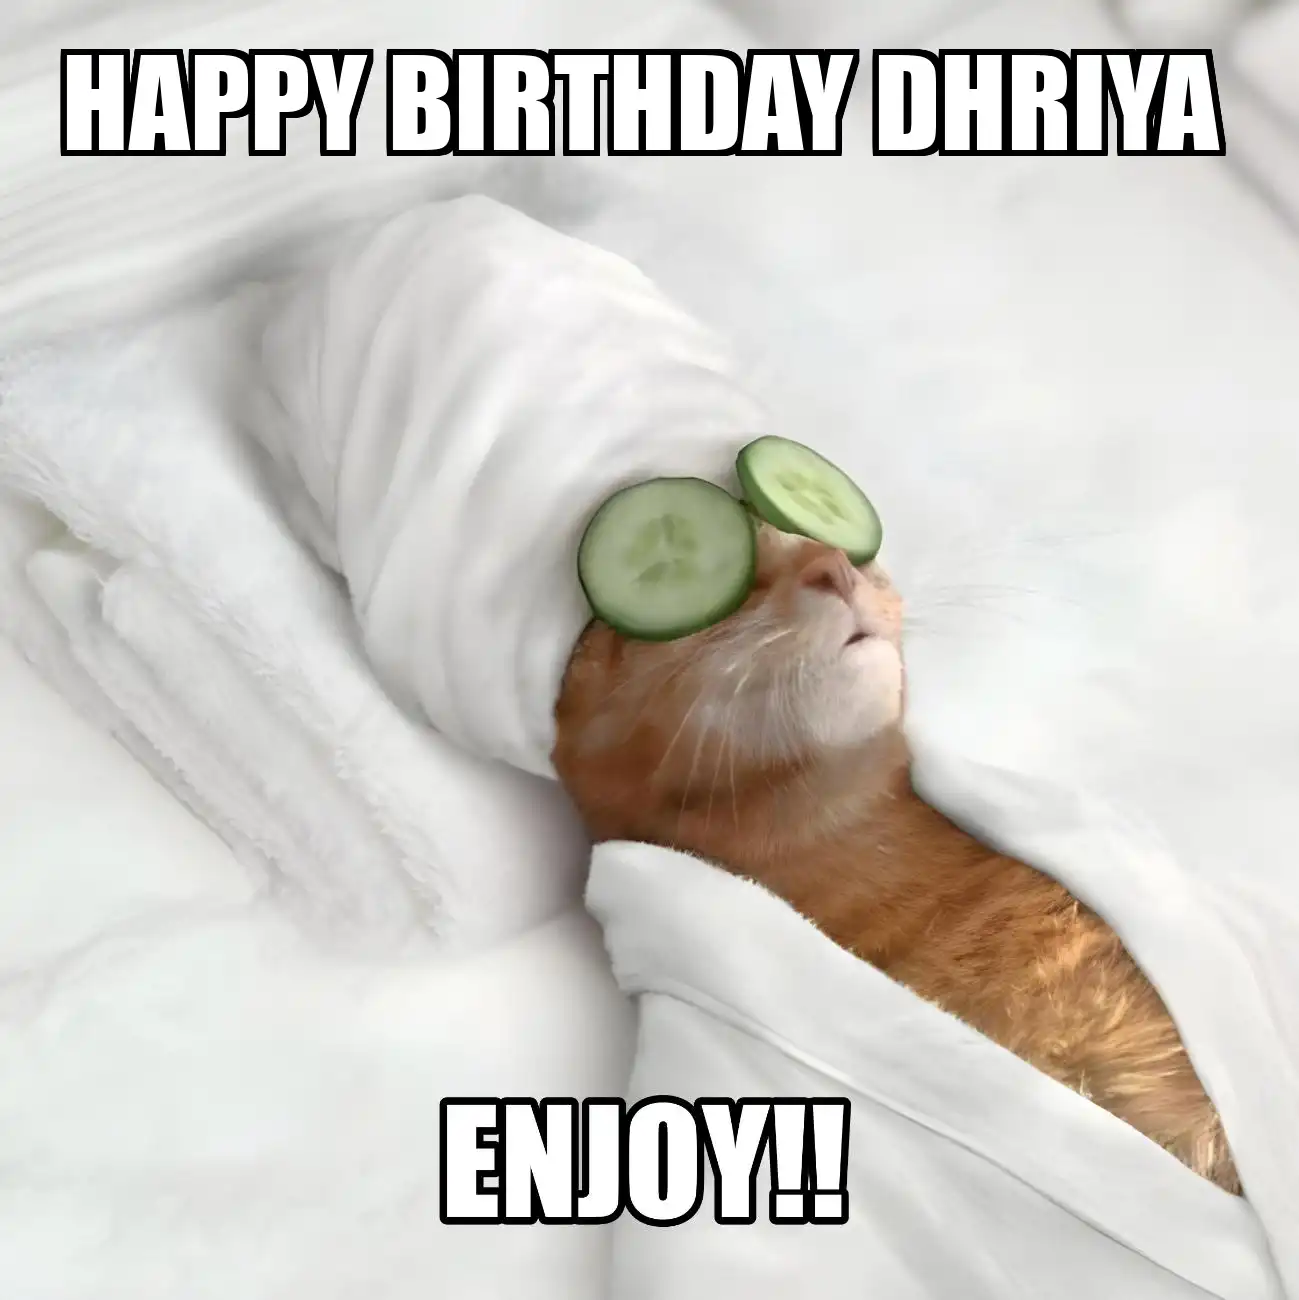 Happy Birthday Dhriya Enjoy Cat Meme